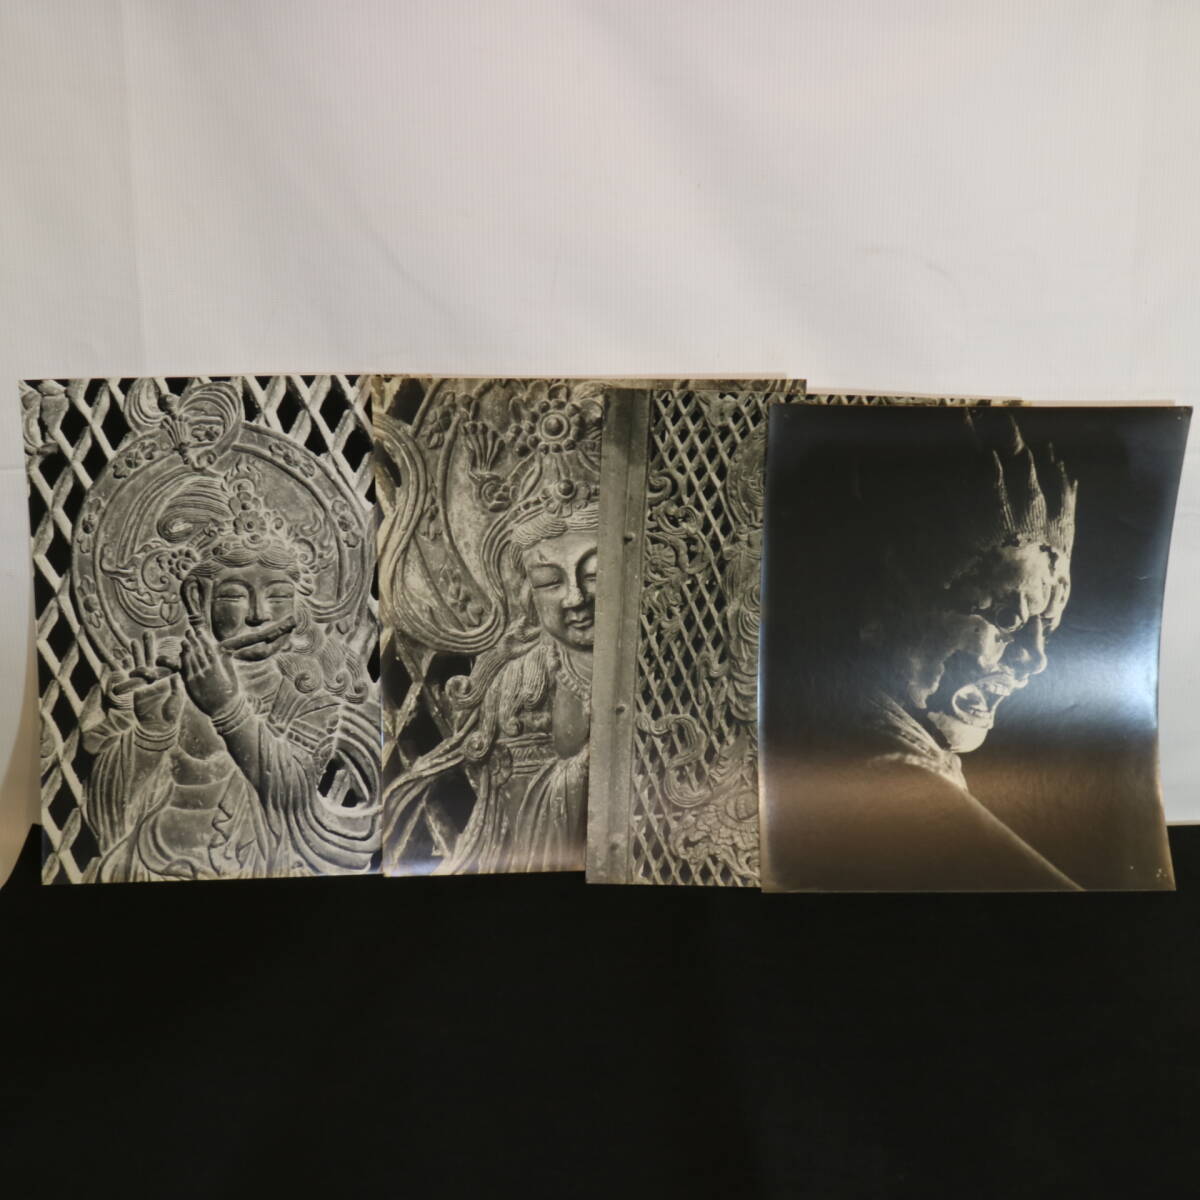  モノクロ 仏像 写真 14枚セット 奈良帝室博物館 鹿鳴館 永野太造 仏像 彫刻 印刷物 ビンテージ 中古の画像3